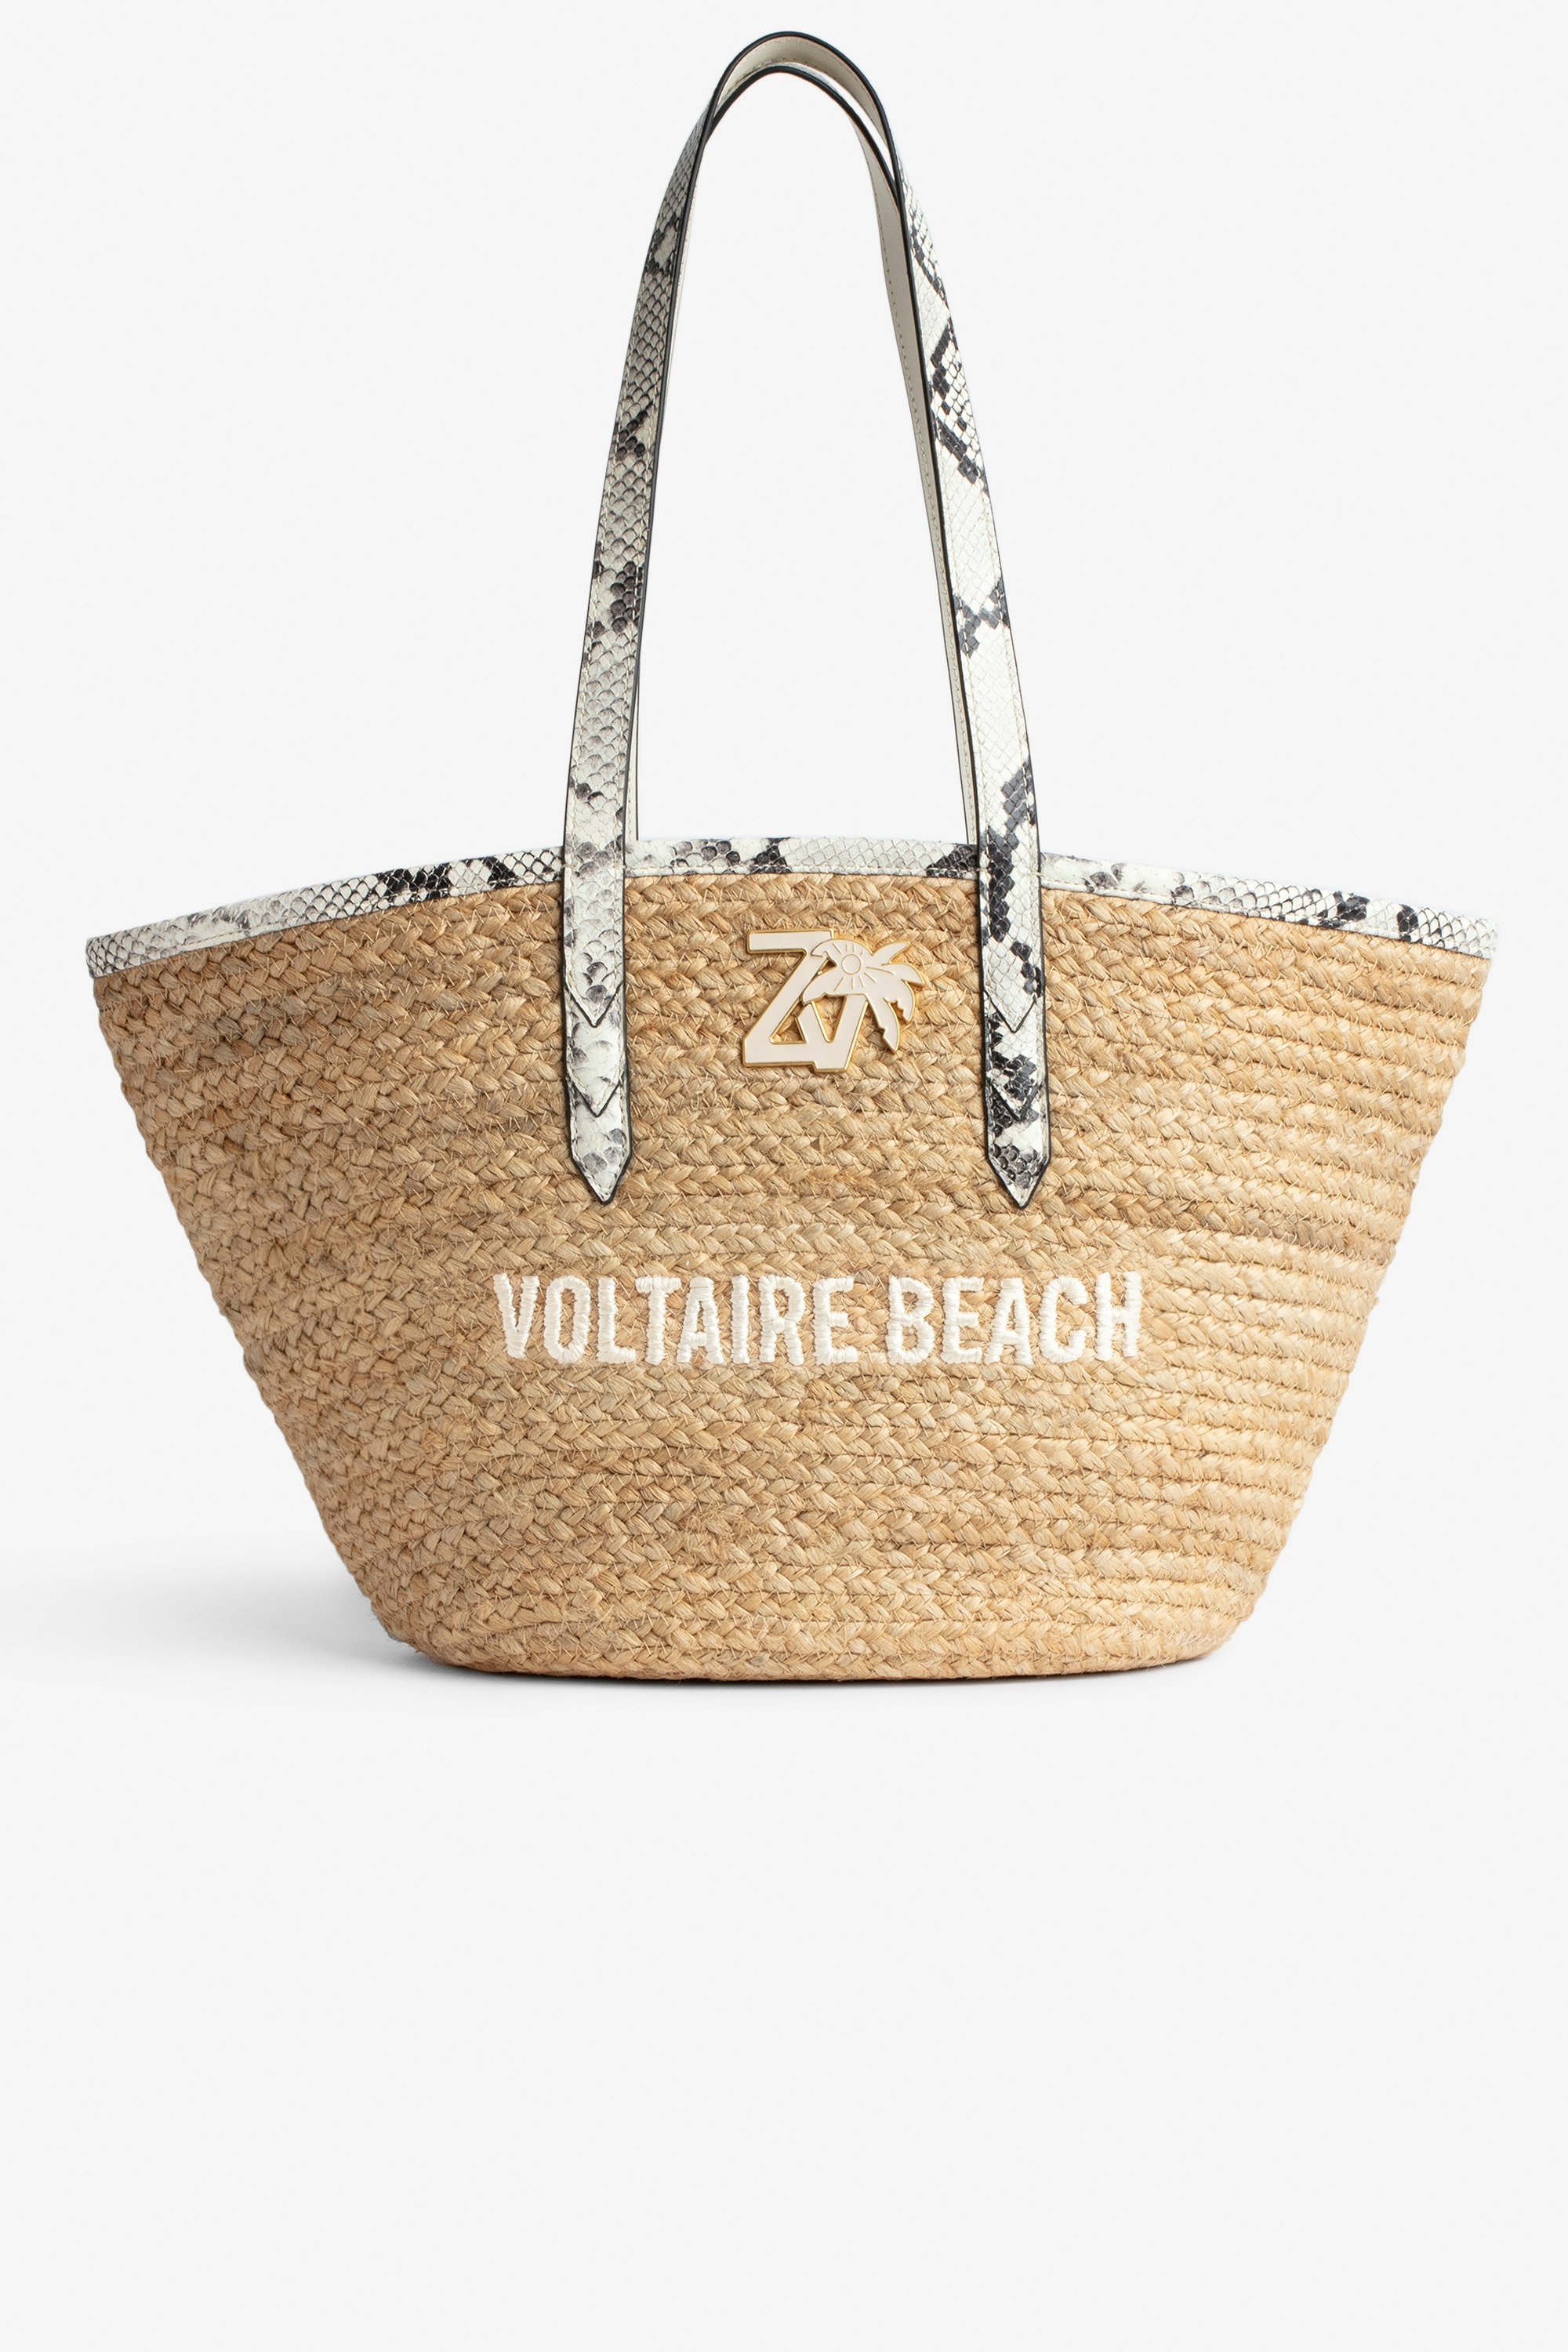 Tasche Le Beach Bag Damen-Strohtasche mit Henkeln aus ecrufarbenem Leder in Python-Optik, „Voltaire Beach“-Stickerei und ZV-Charm